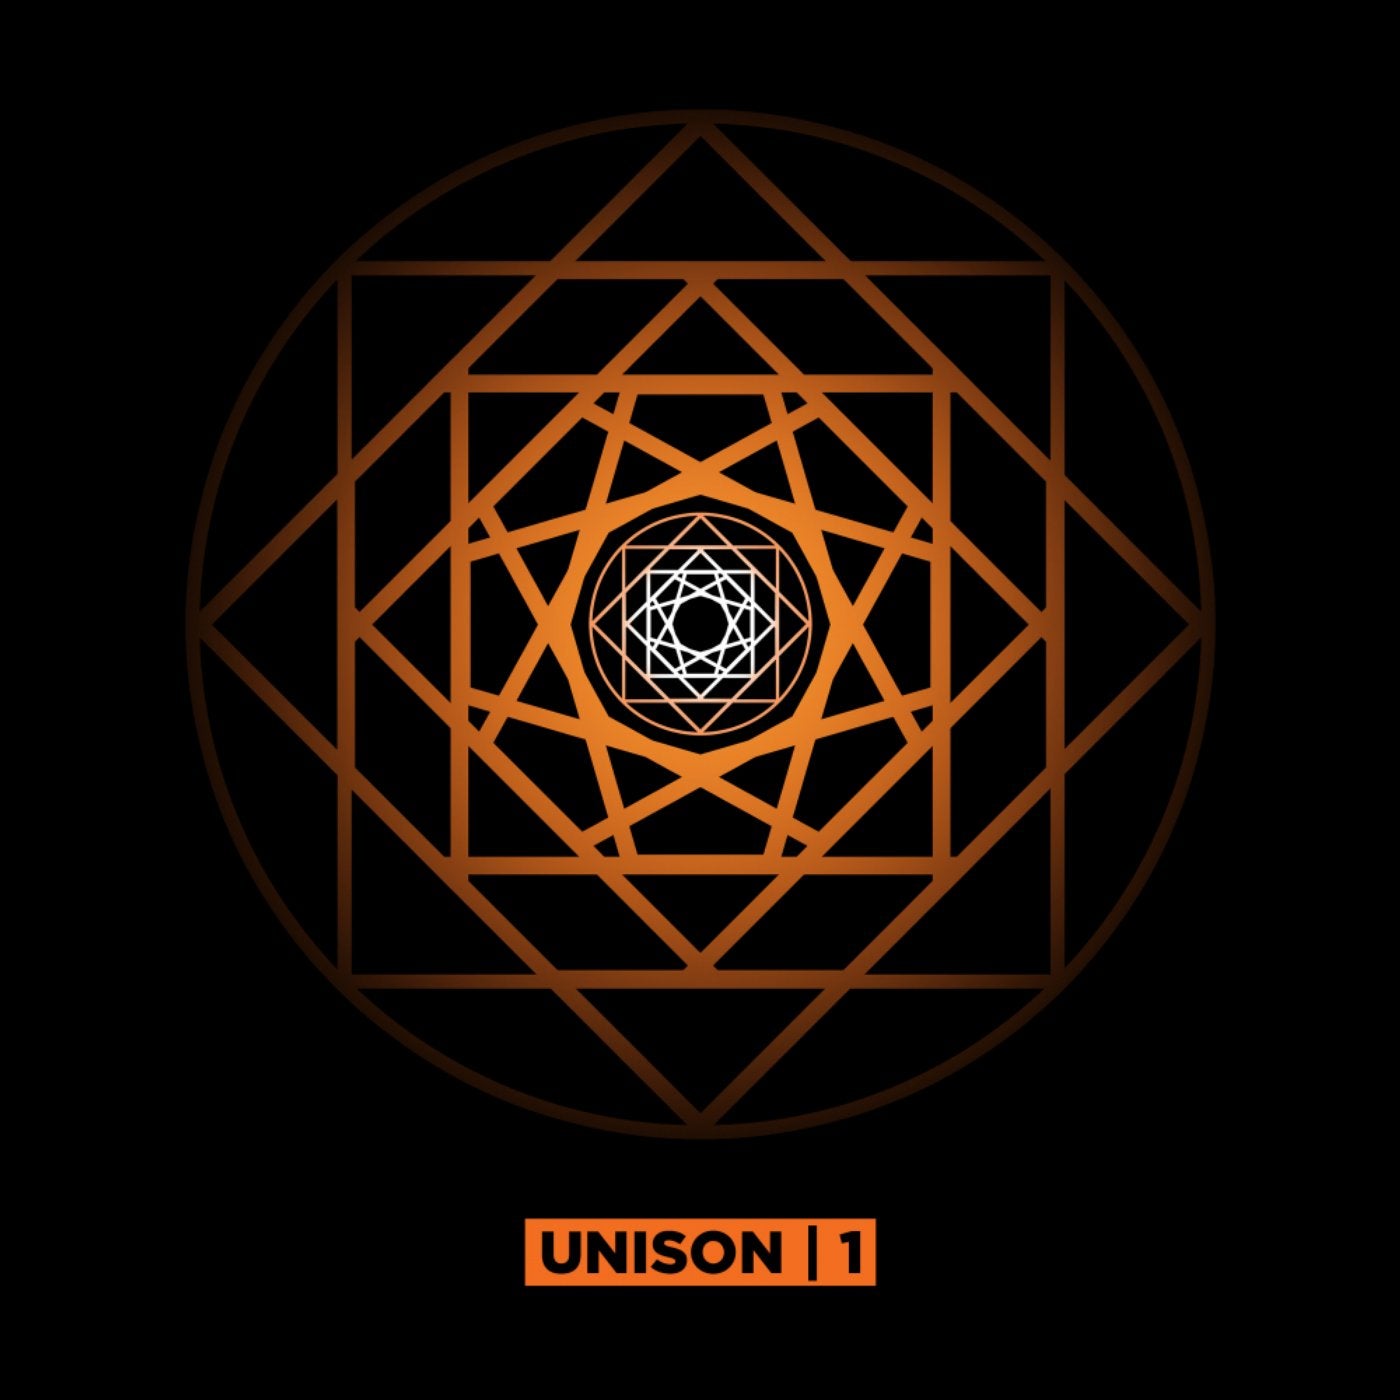 UNISON | 1